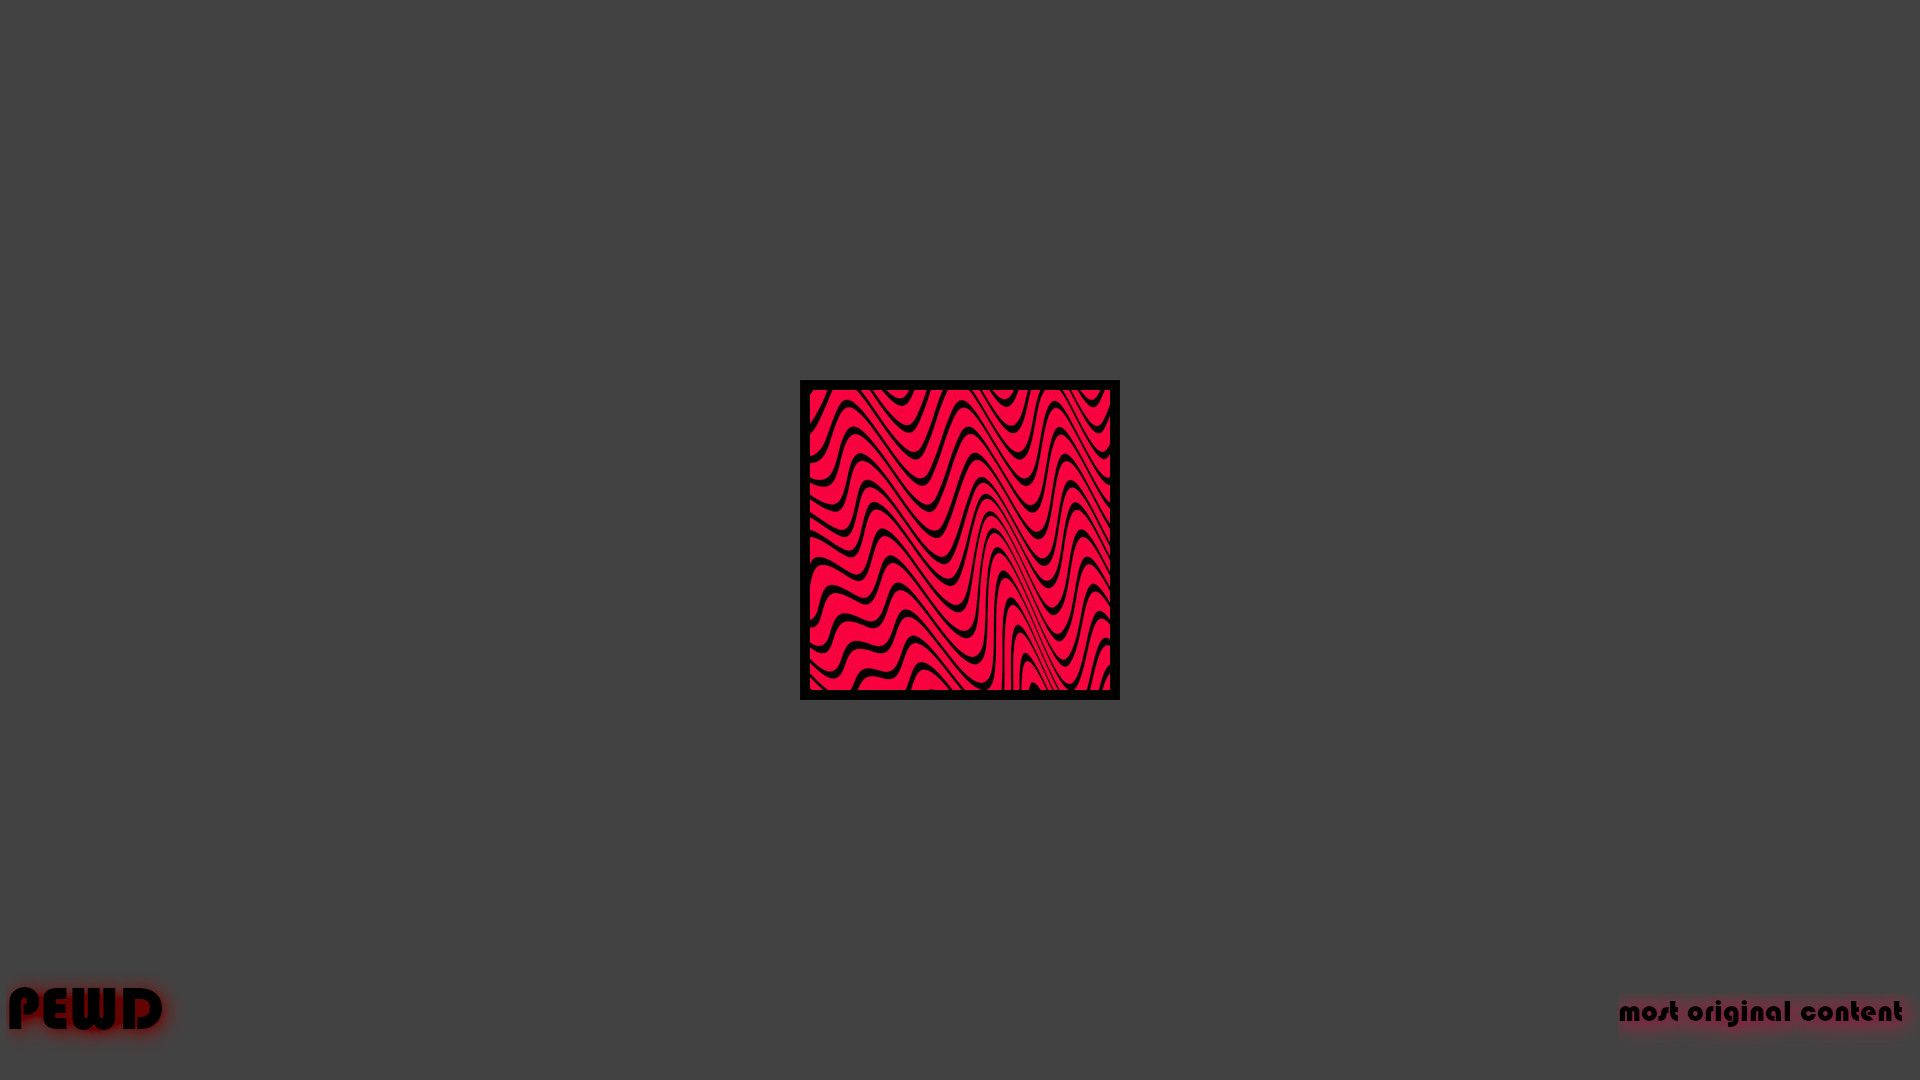 “Pewdiepie Minimalist Logo” Wallpaper